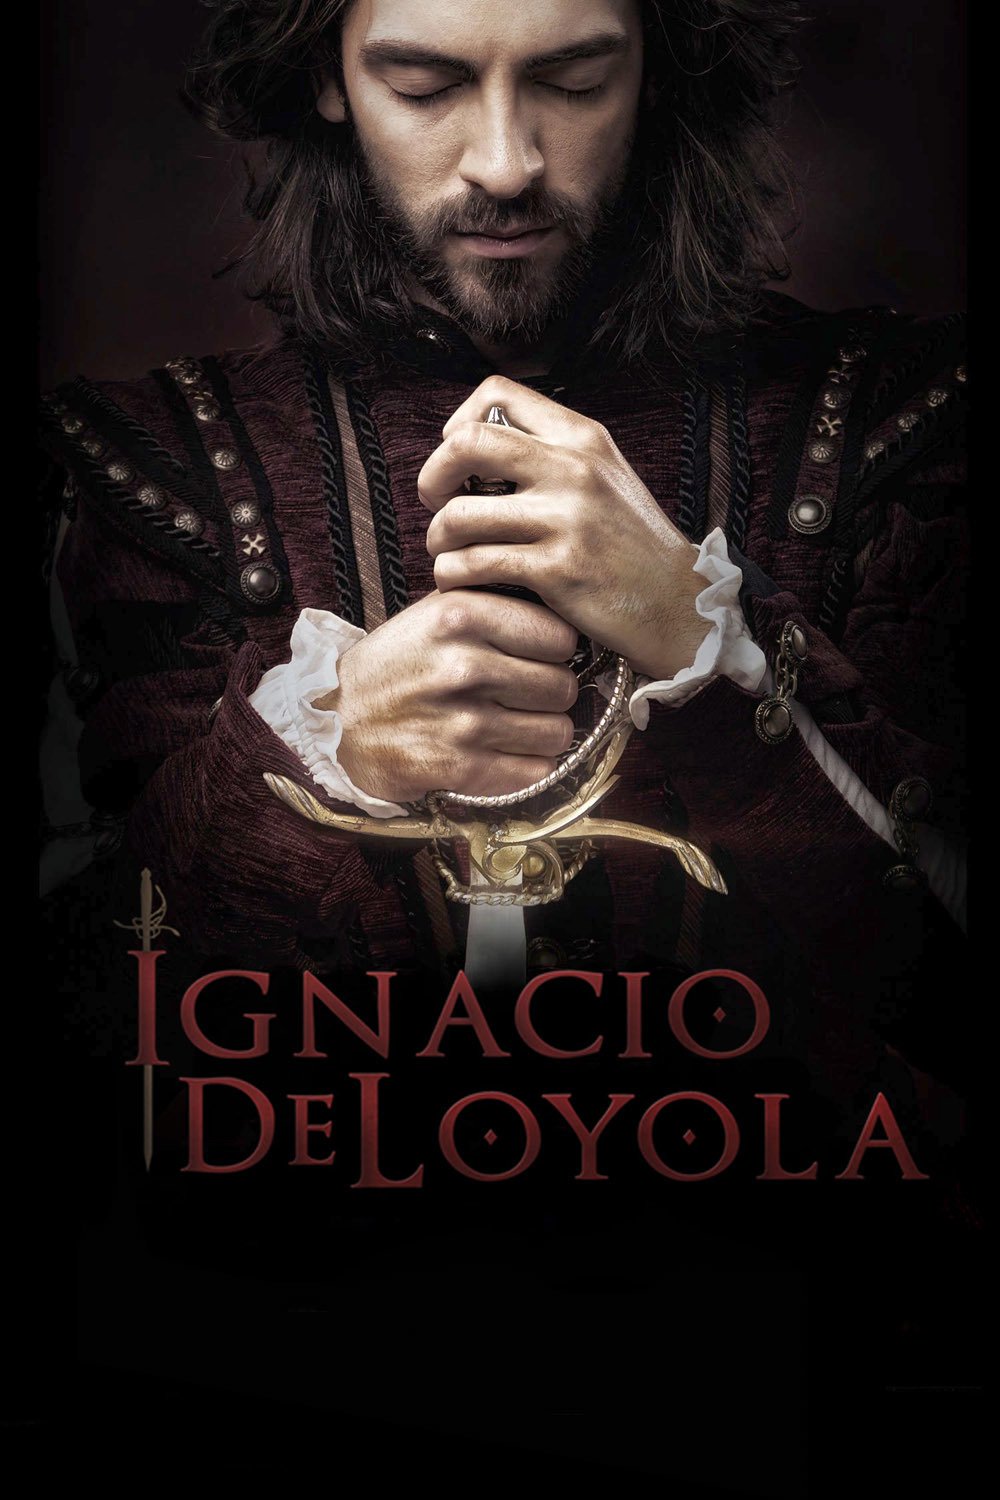 Photo of Pre venta para el estreno de la película ‘Ignacio de Loyola’